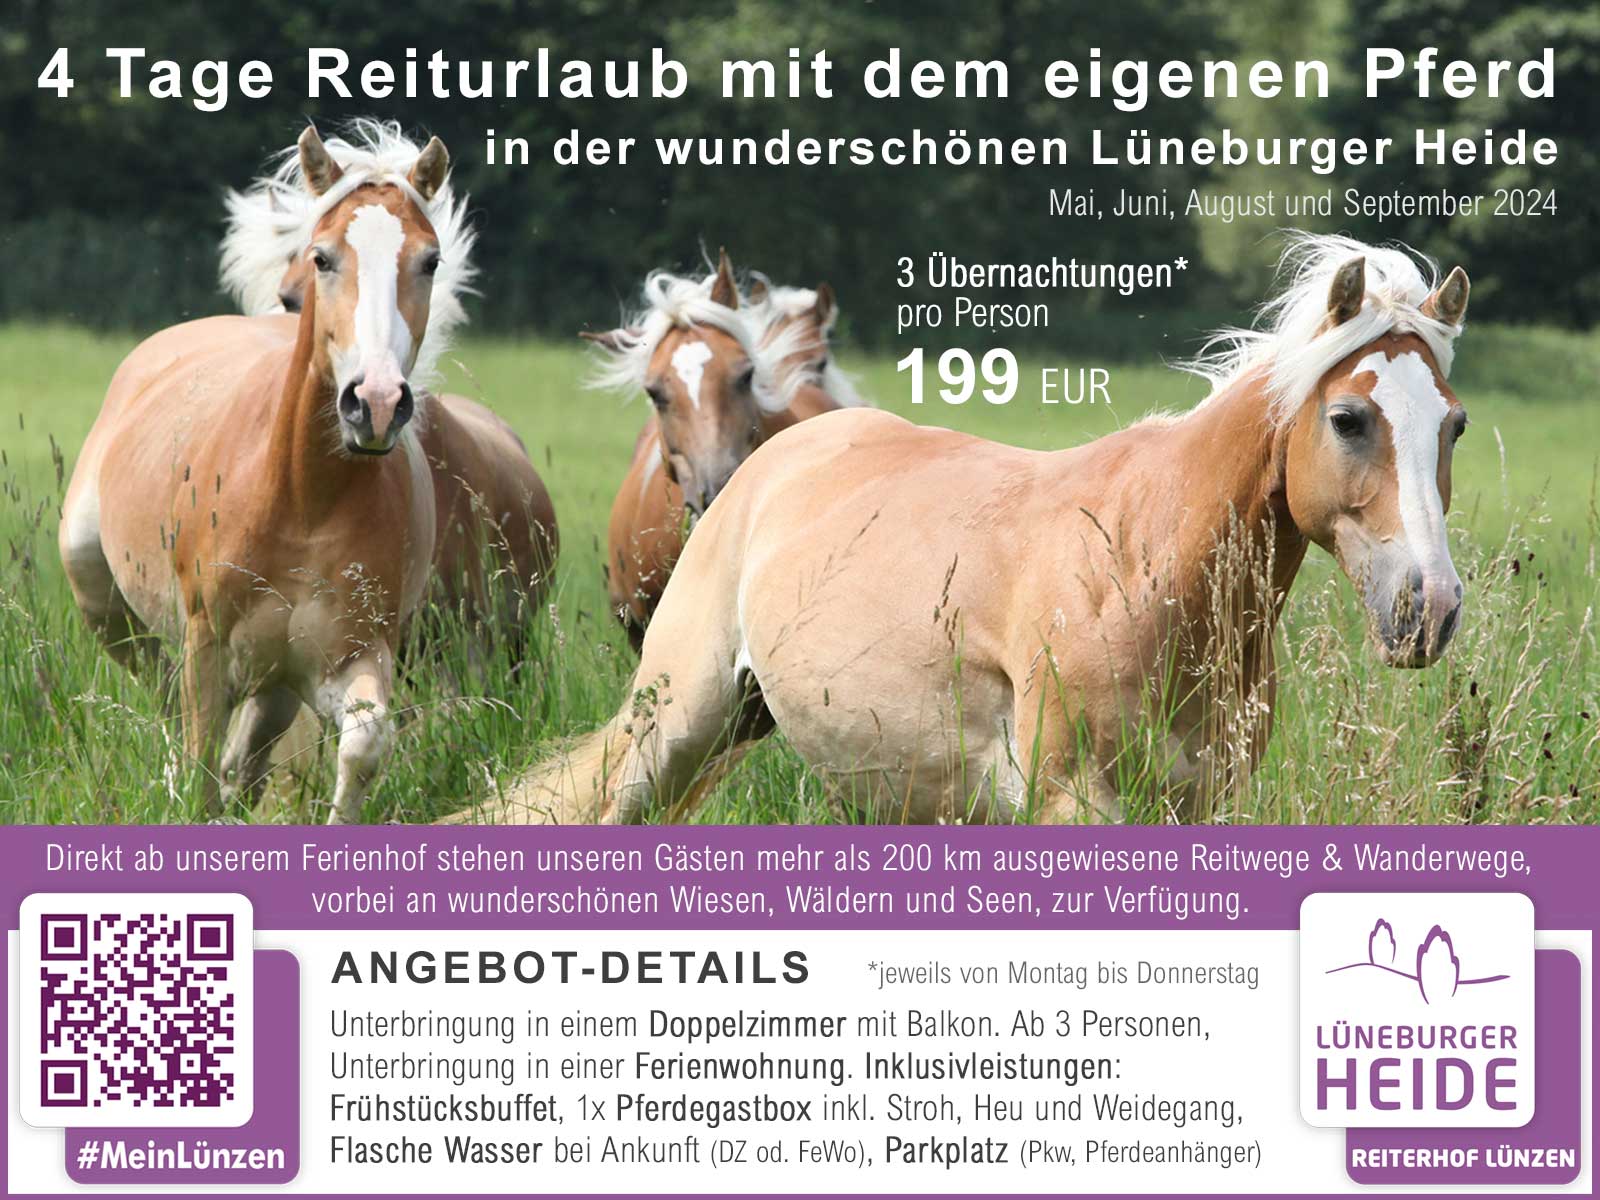 Weitere Infos: 4 Tage Reiturlaub mit dem eigenen Pferd in der Lüneburger Heide